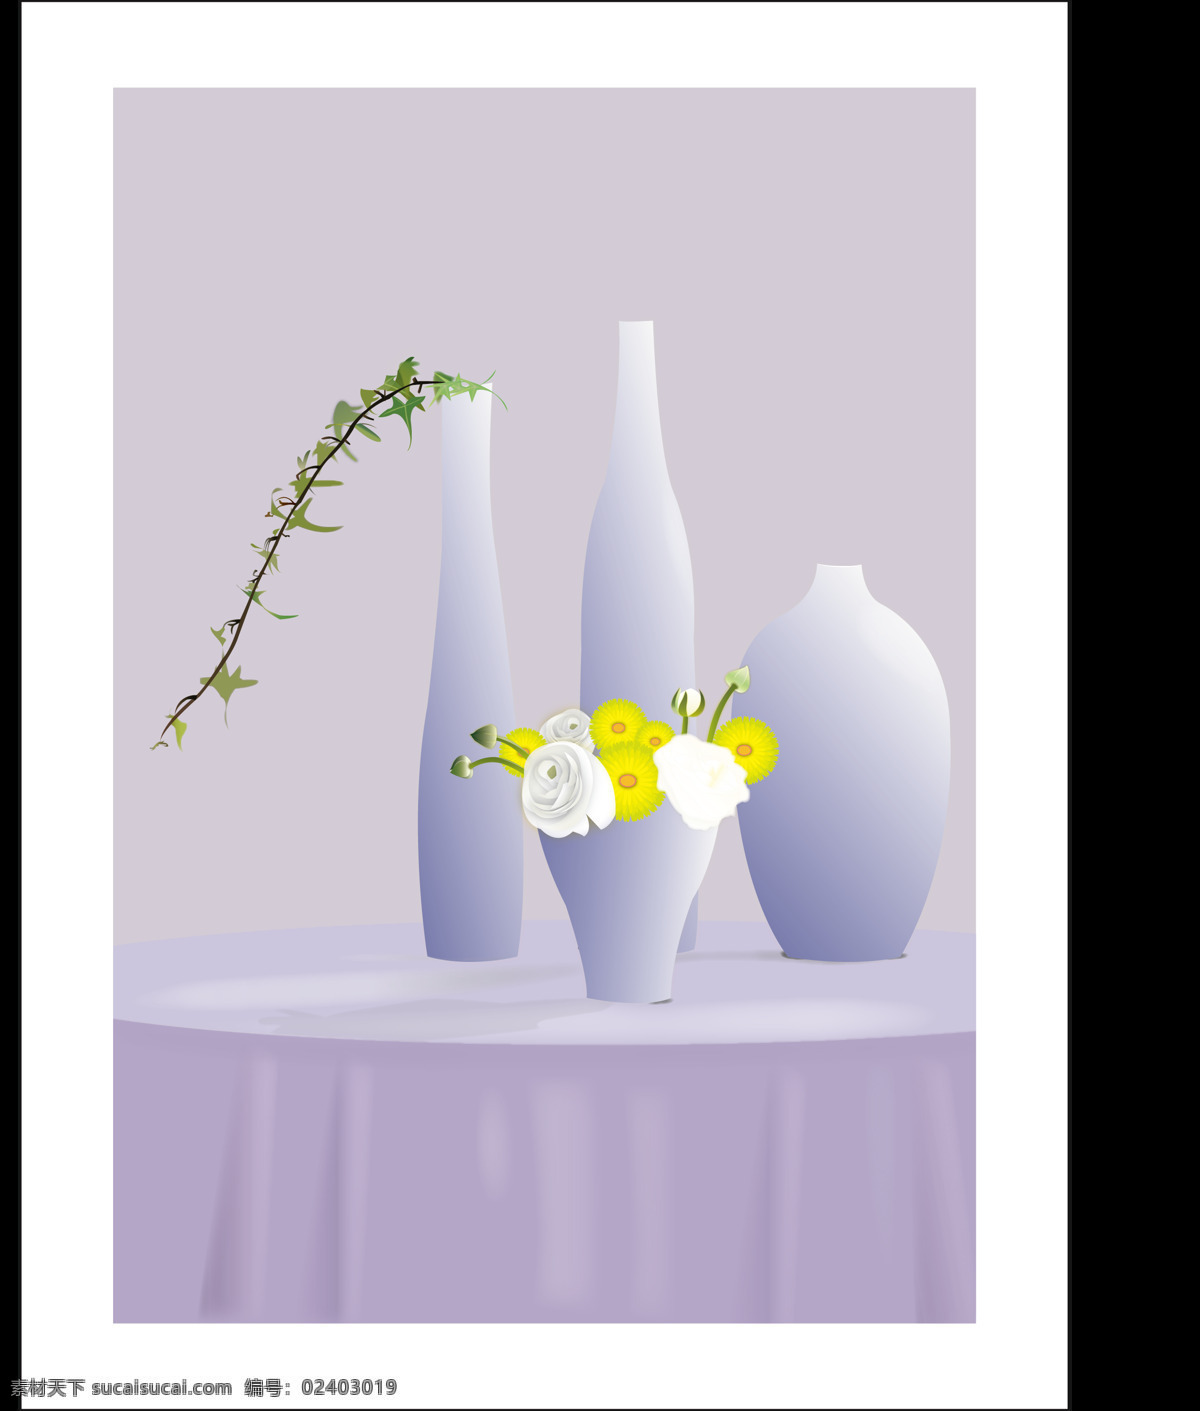 静美 花瓶 桌子 组合 菊花 插画 模板 圆桌 矢量 可编辑